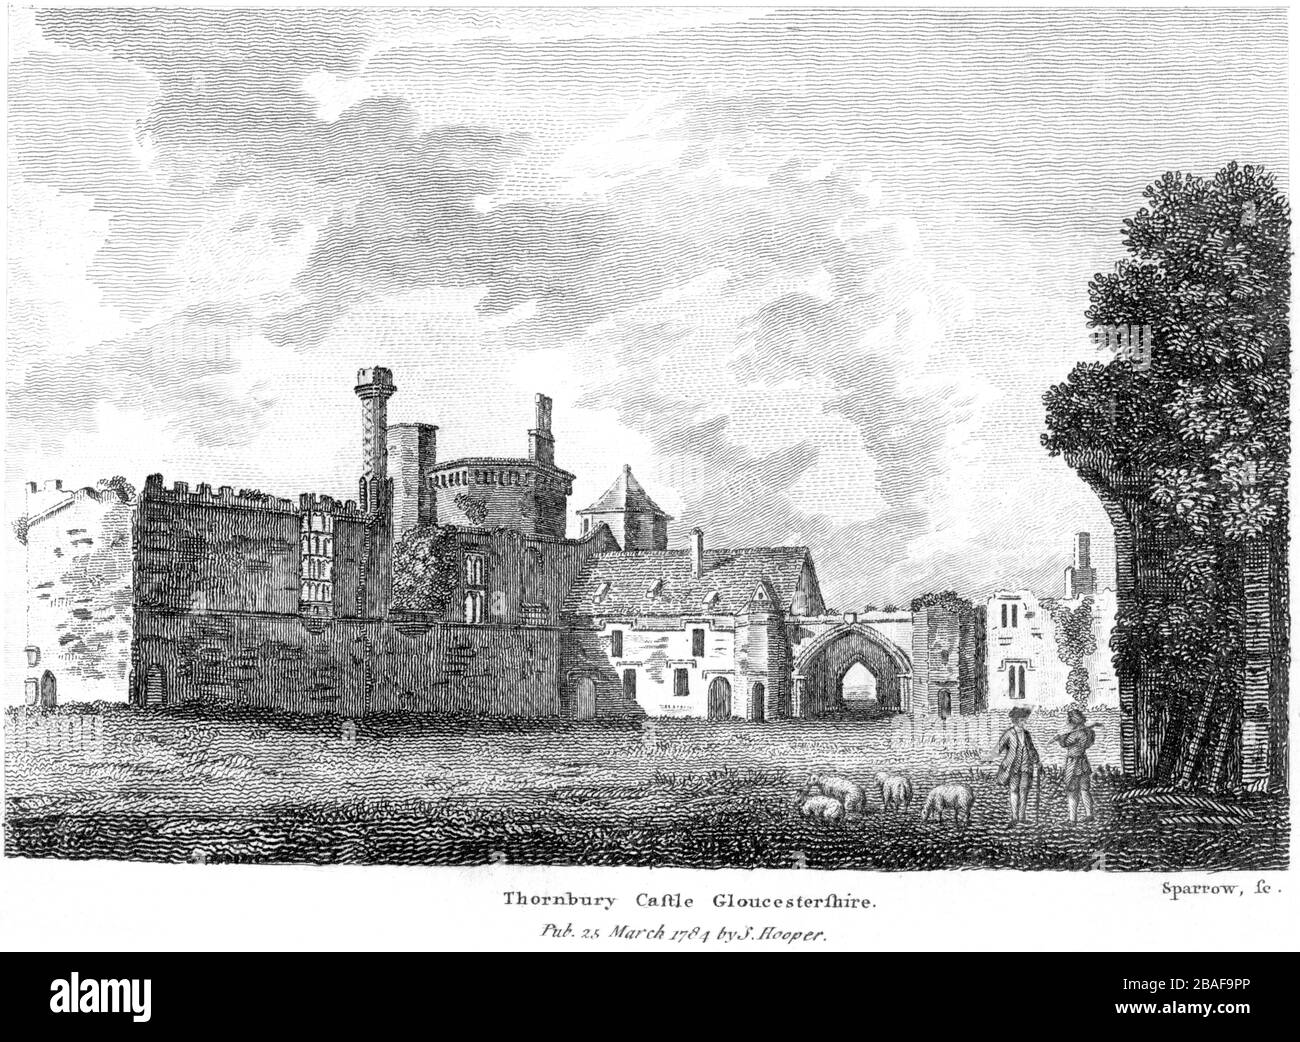 Eine Gravur von Thornbury Castle Gloucestershire von der Zeit um das Jahr 811 in hoher Auflösung gescannt. Ich glaube, dass das Urheberrecht frei ist. Stockfoto